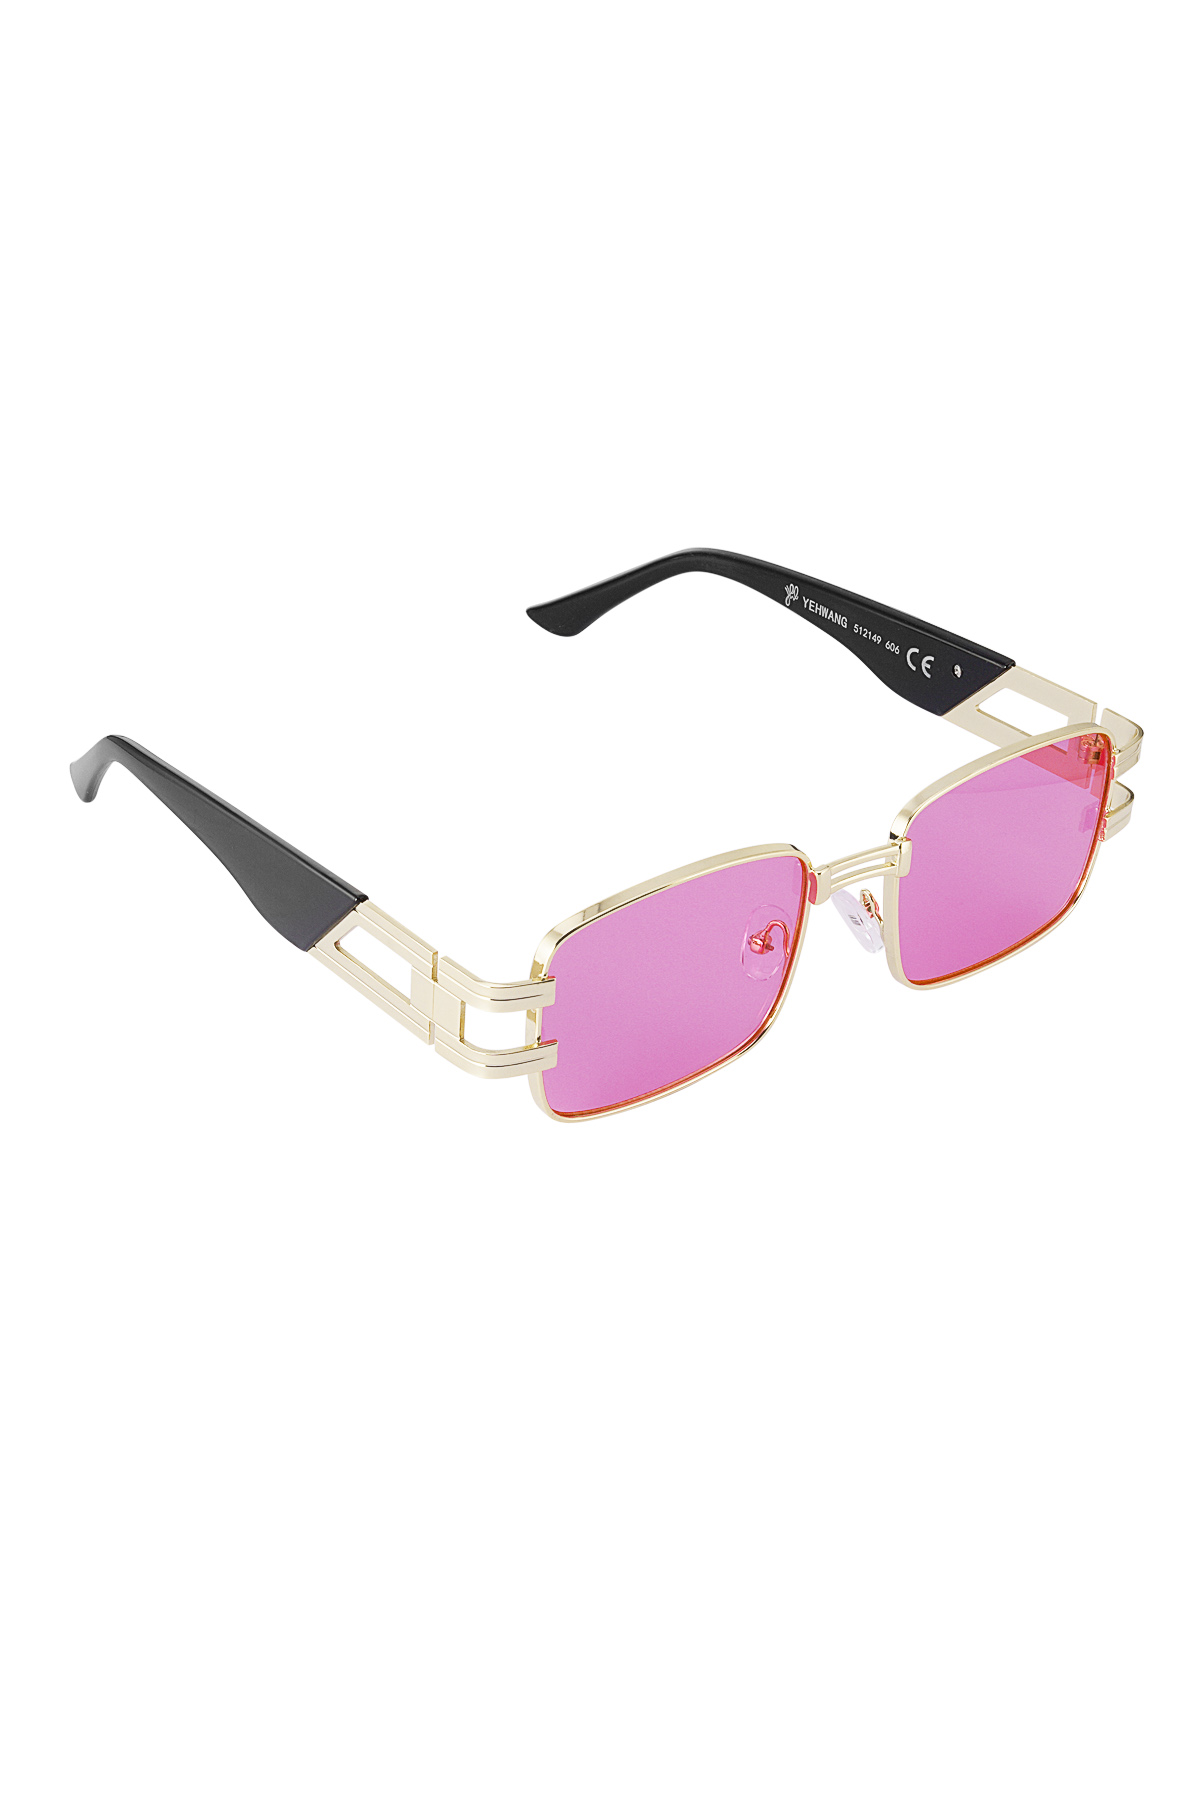 Sunglasses simple metal essential - fuchsia